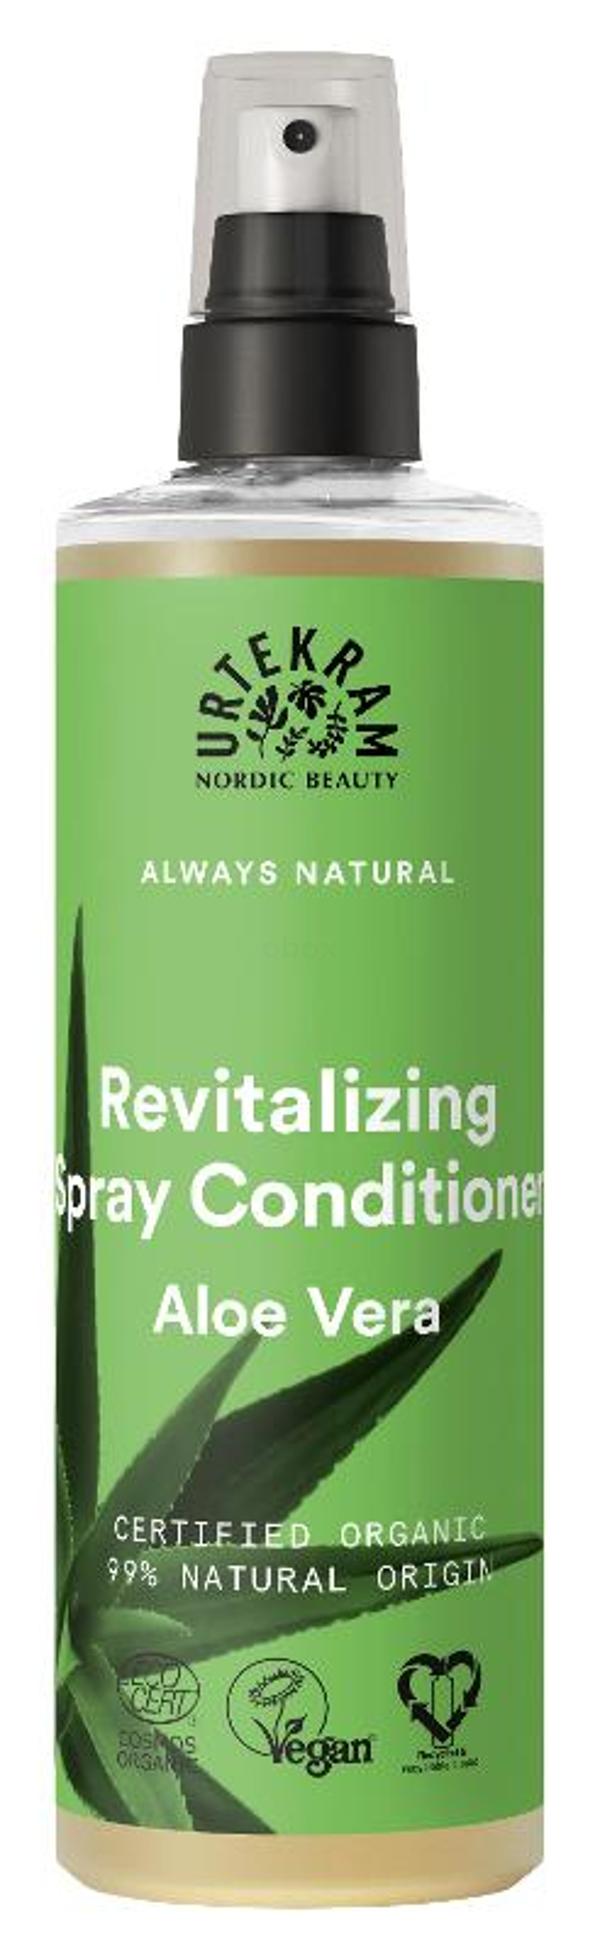 Produktfoto zu Revitalizing Spray Conditioner